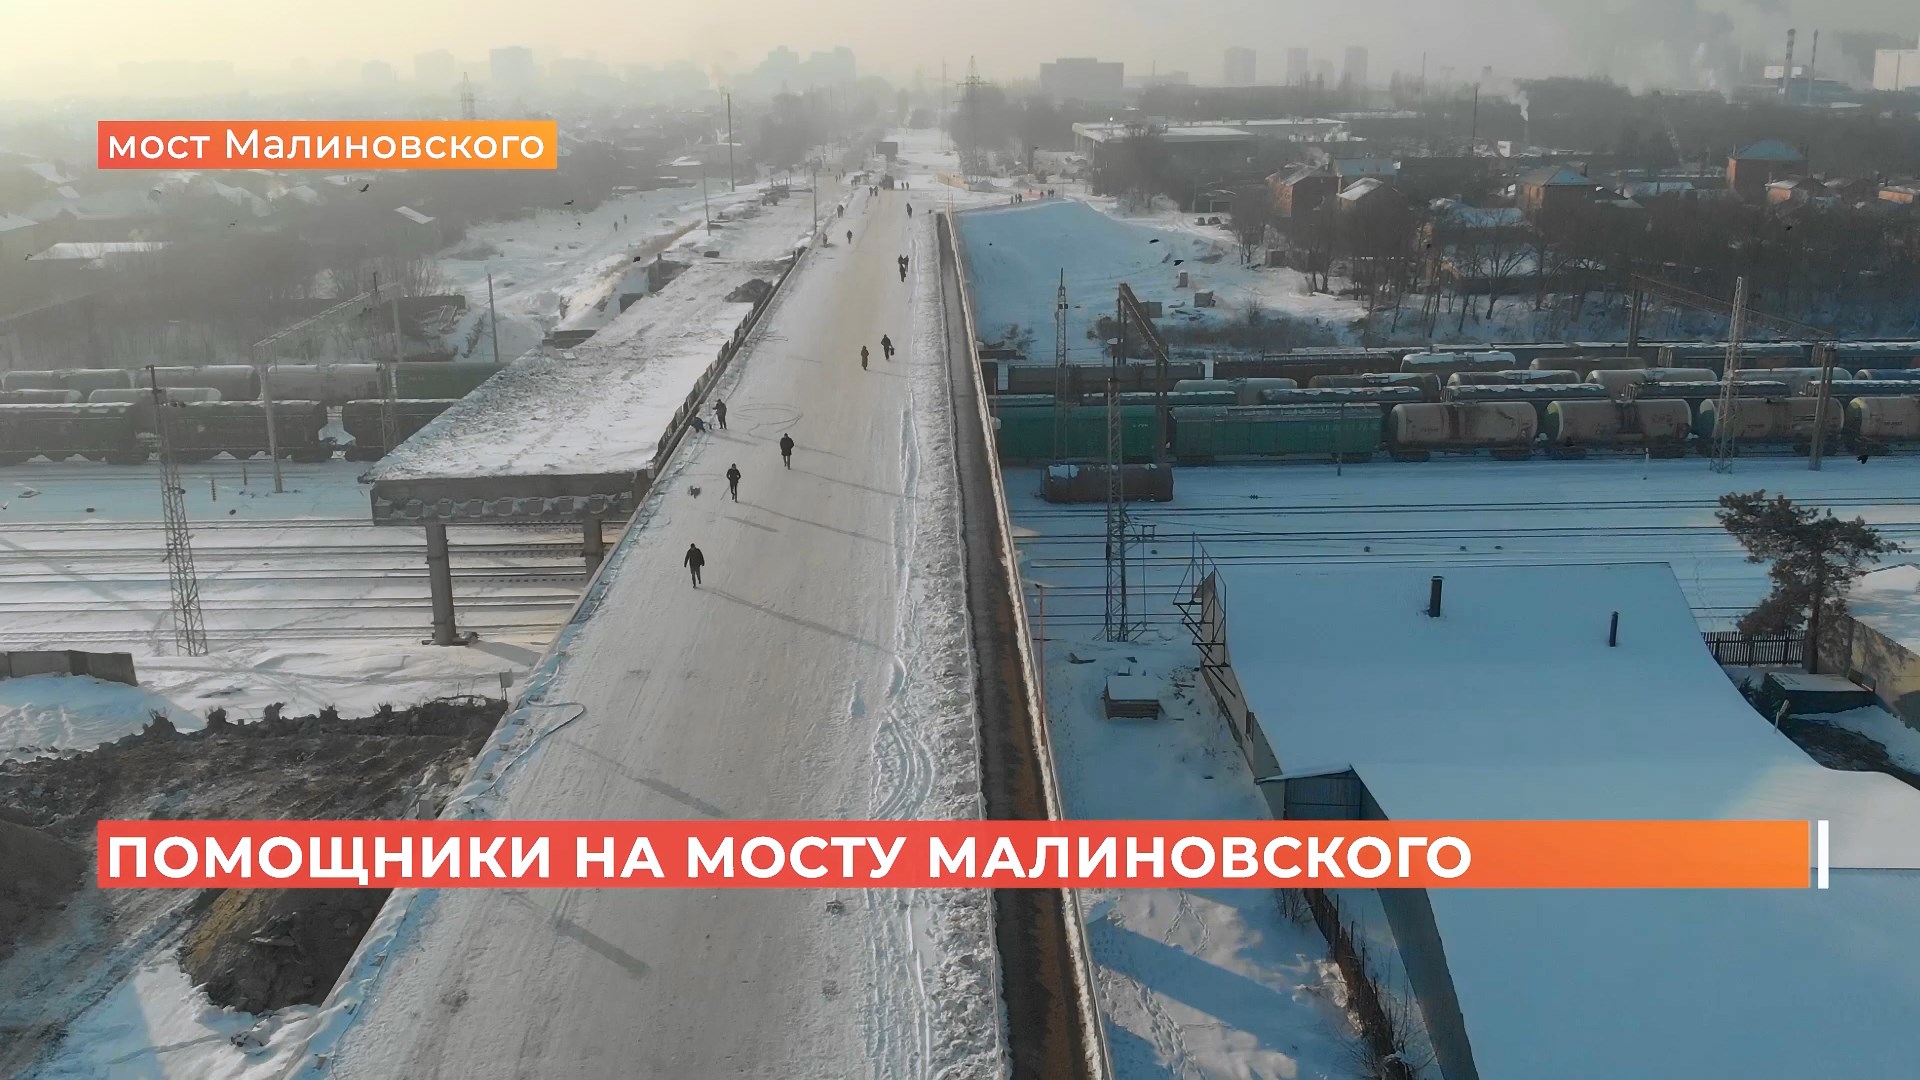 Теперь на мосту Малиновского дежурят волонтеры